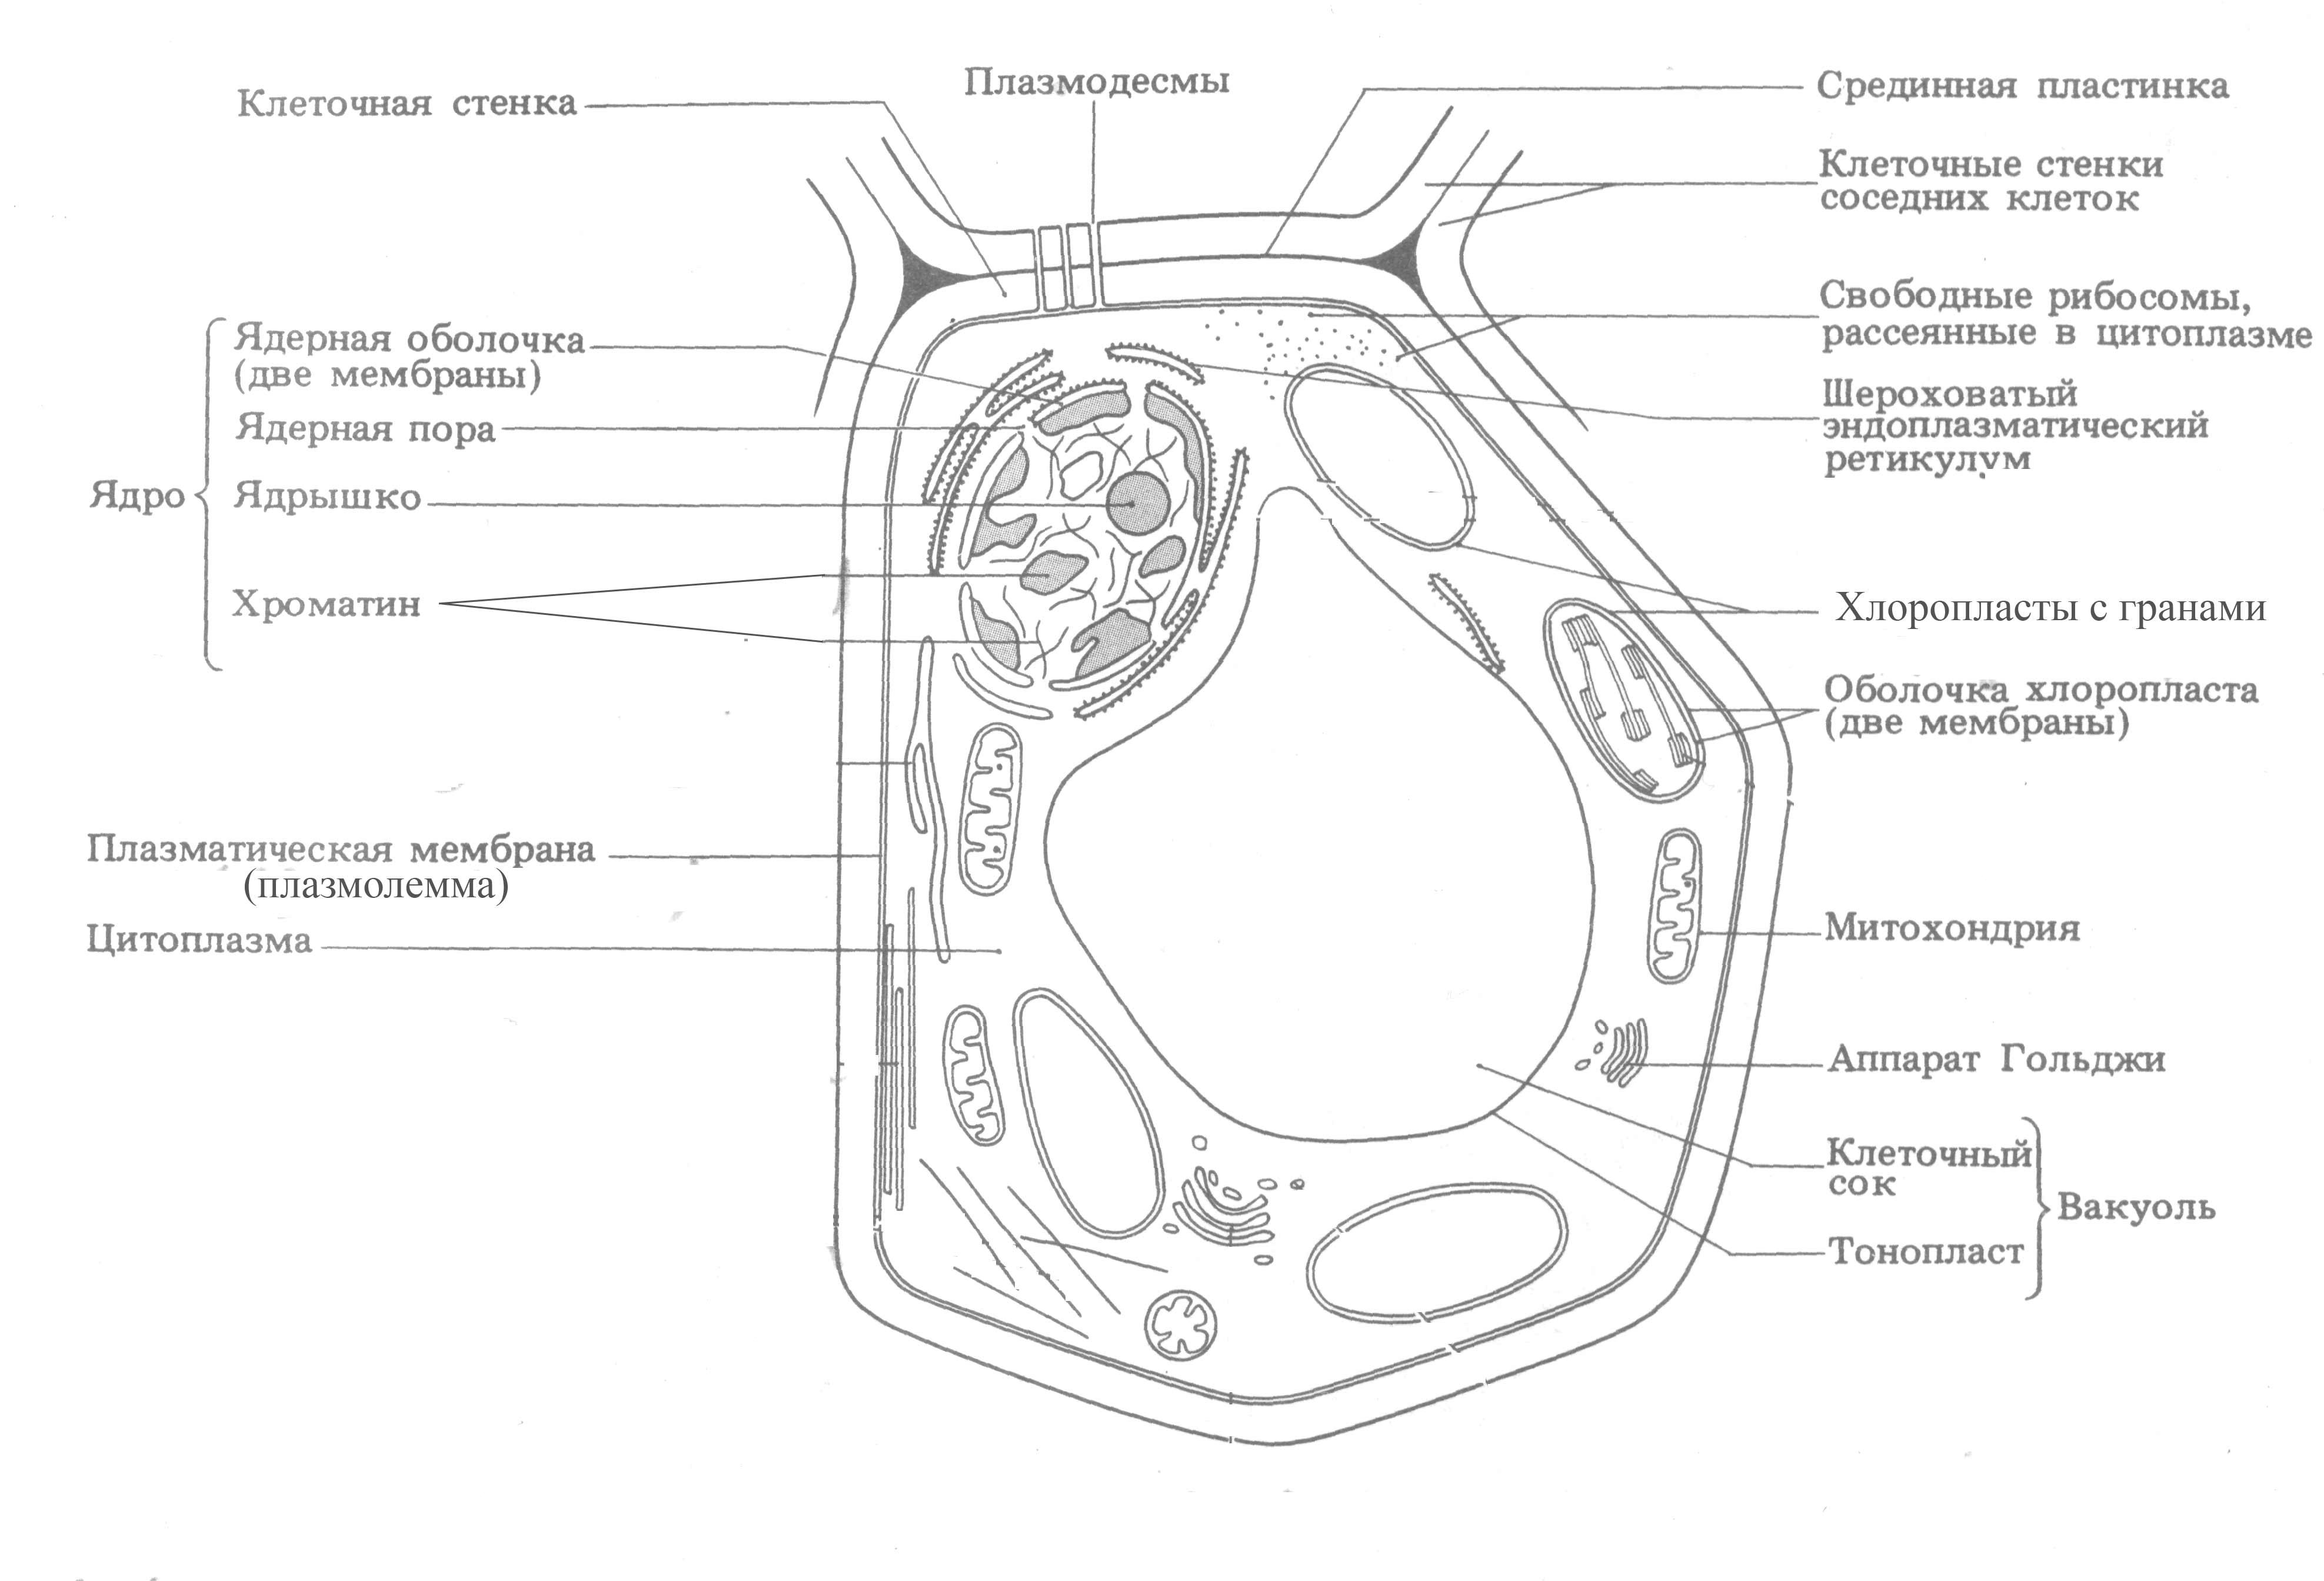 Пример растительной клетки. Органоиды растительной клетки схема. Органоиды растительной клетки схема строения. Схема строения растительной клетки рисунок с подписями. Органеллы растительной клетки схема.